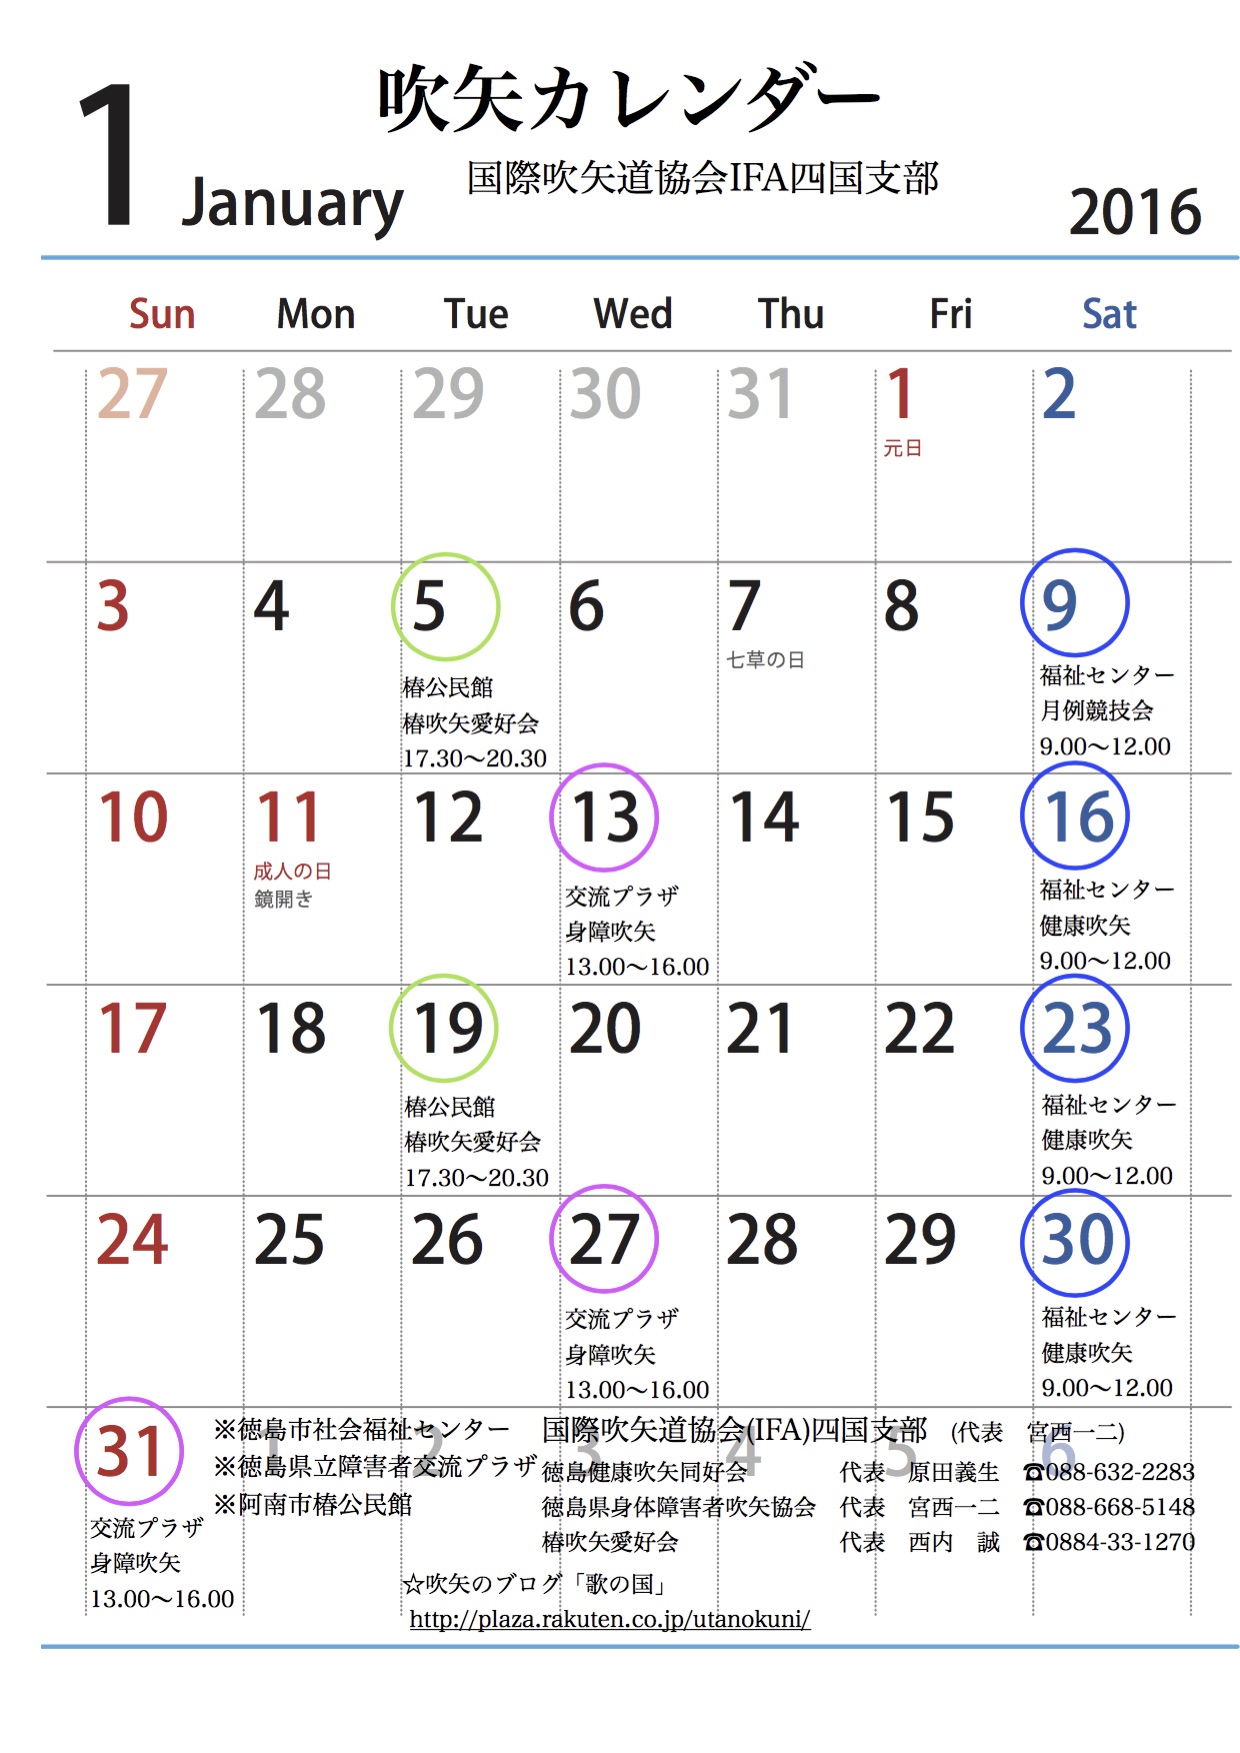 平成28年1月の吹矢カレンダー 歌の国 楽天ブログ